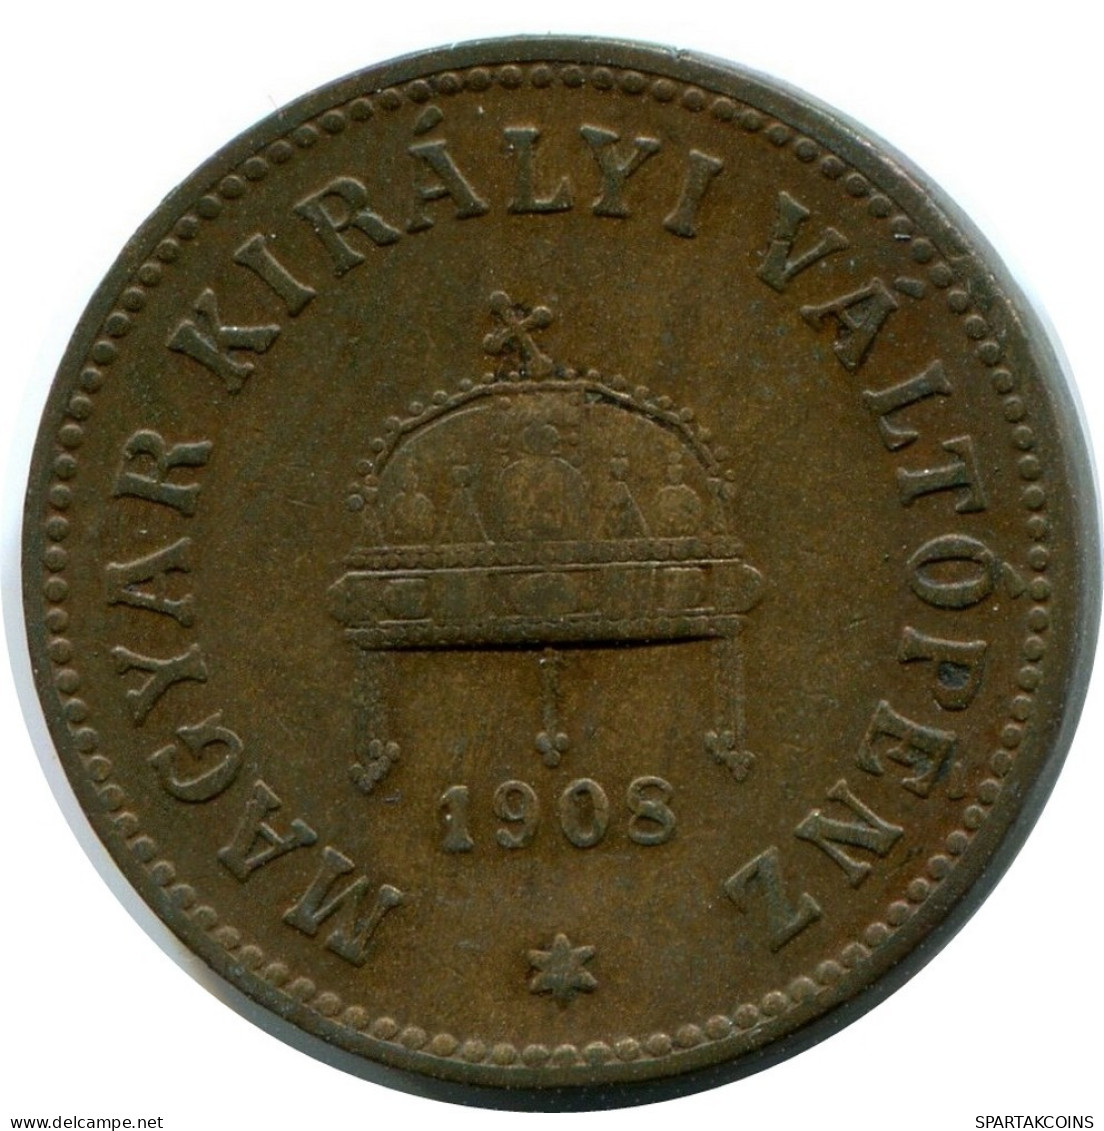 2 FILLER 1908 HUNGRÍA HUNGARY Moneda #AY251.2.E.A - Ungarn